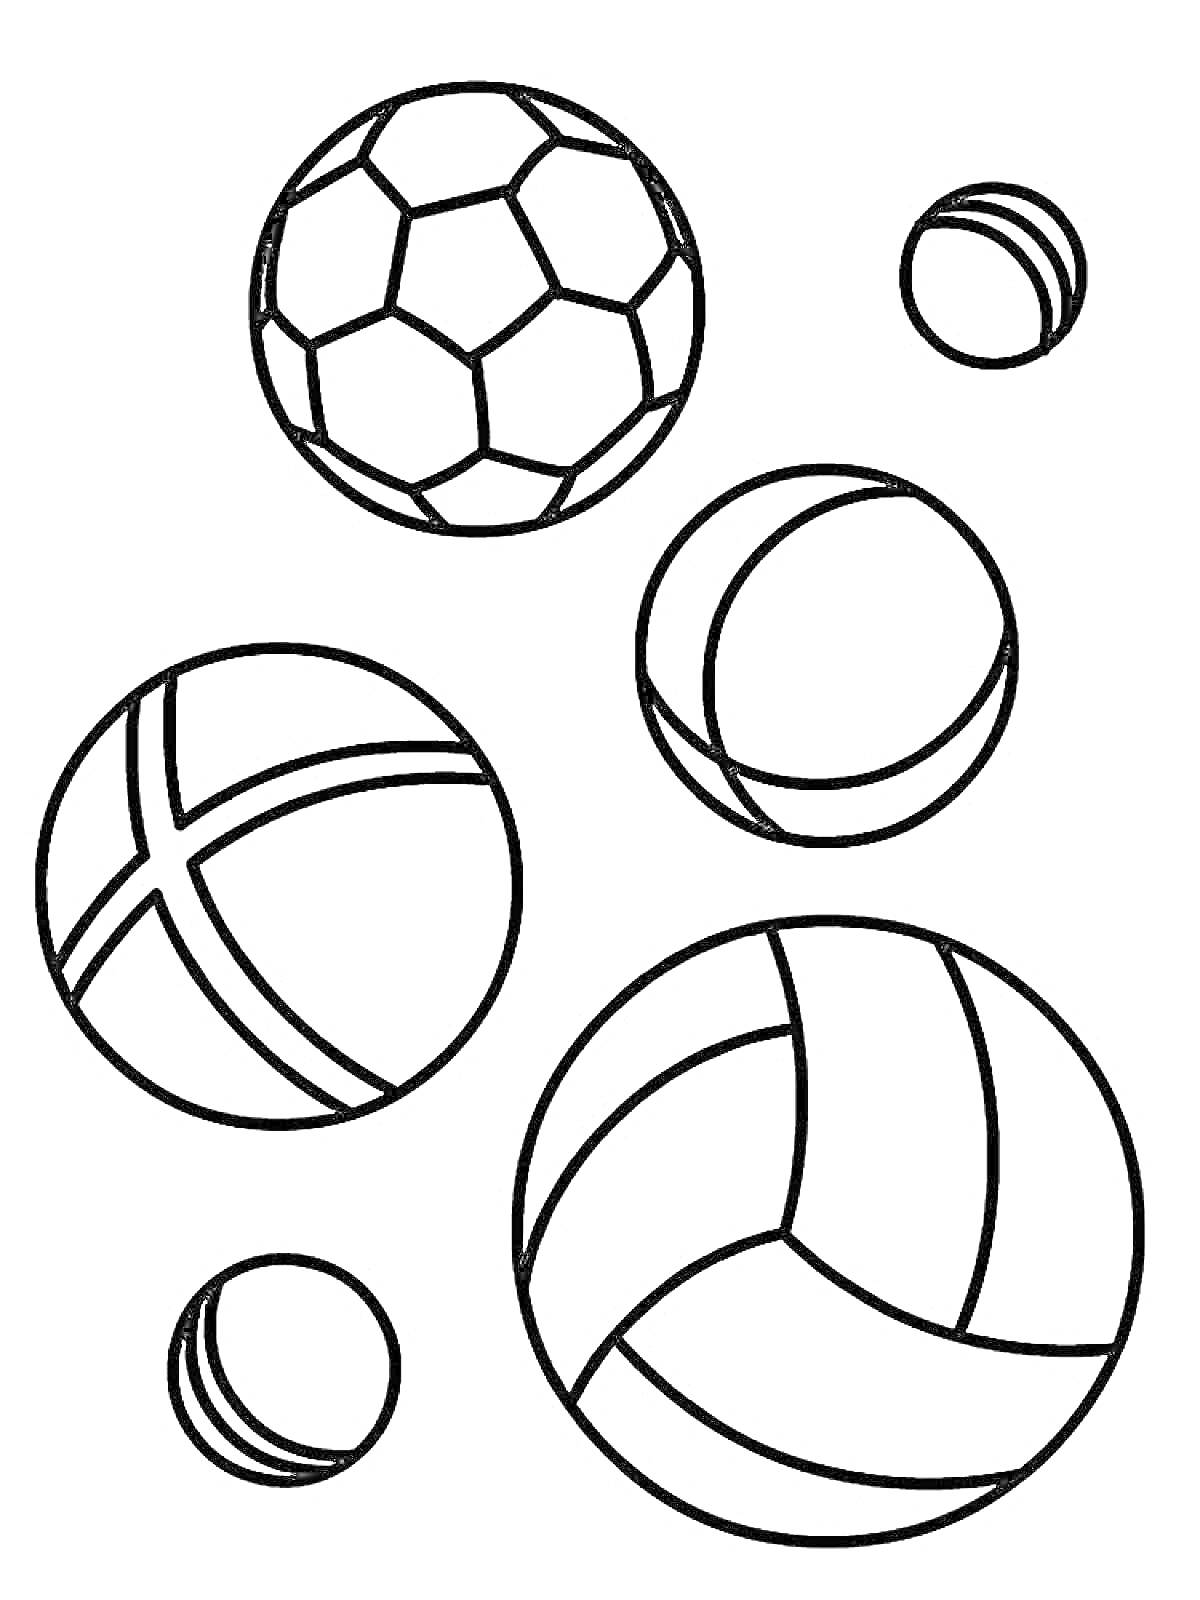 Раскраска Раскраска с футбольным мячом, теннисными мячами, баскетбольным мячом и волейбольным мячом